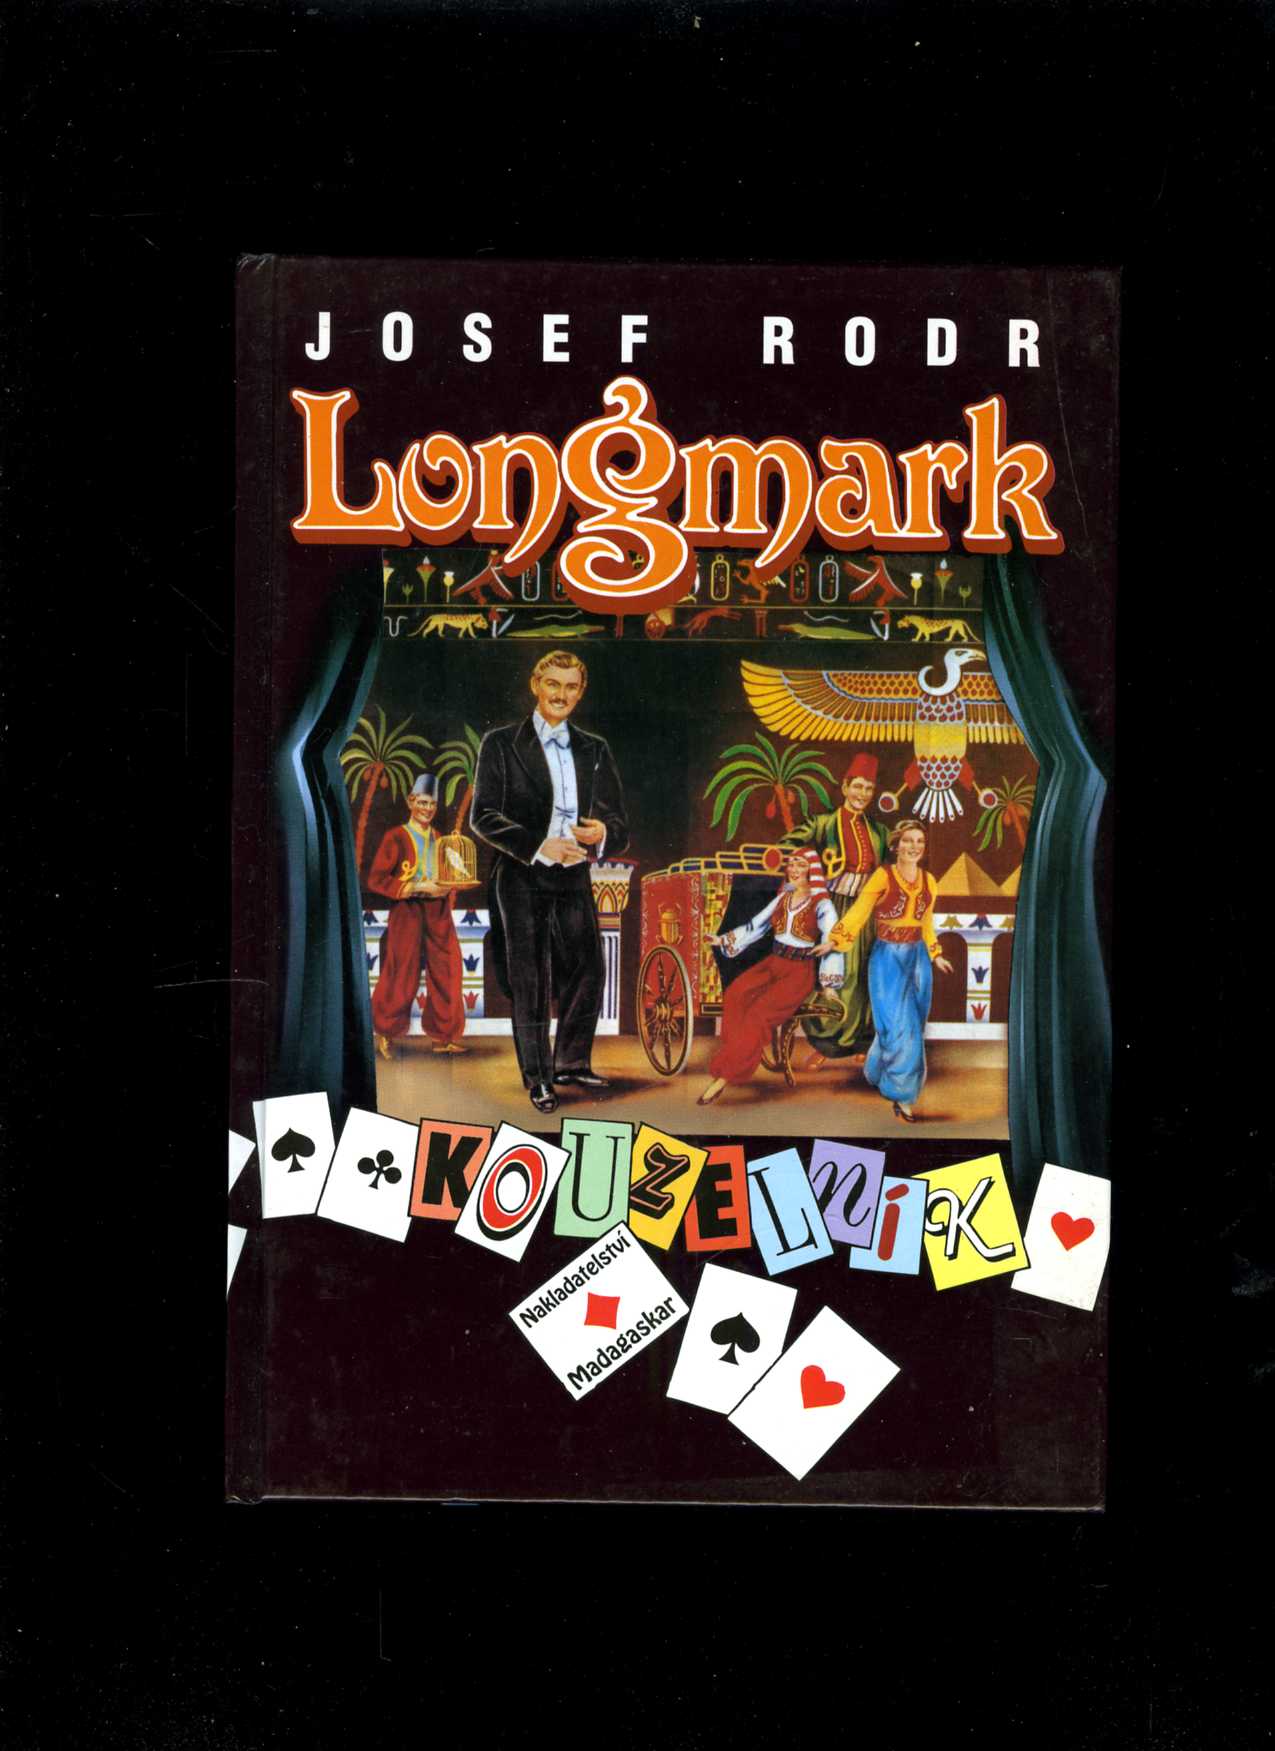 Longmark kouzelník (Josef Rodr)